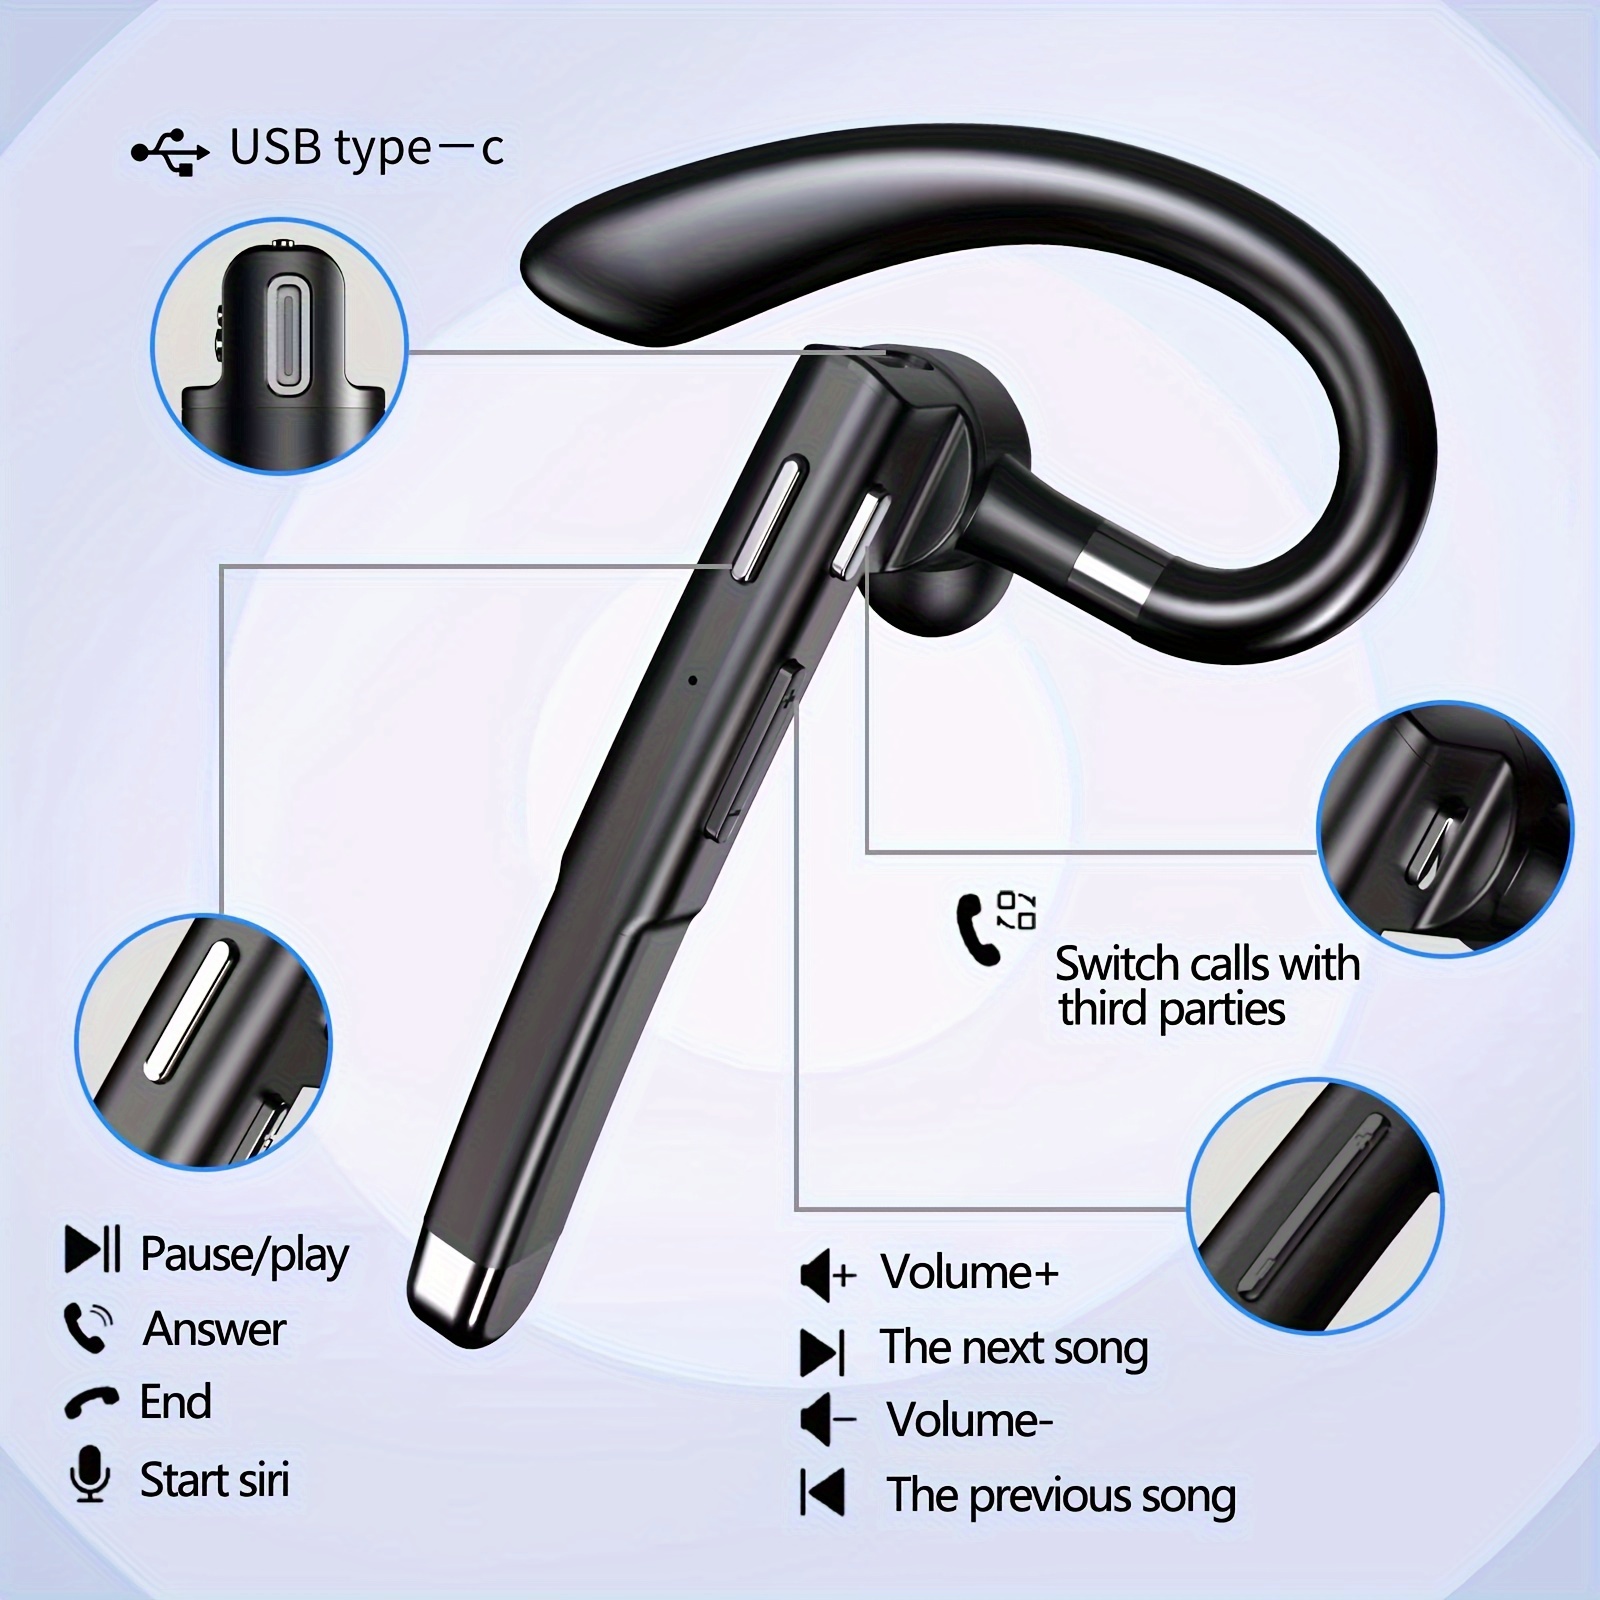 Auriculares inalámbricos Bluetooth con micrófono, cancelación de ruido,  auriculares Bluetooth 3.0 para el hogar, oficina, camionero, negocios